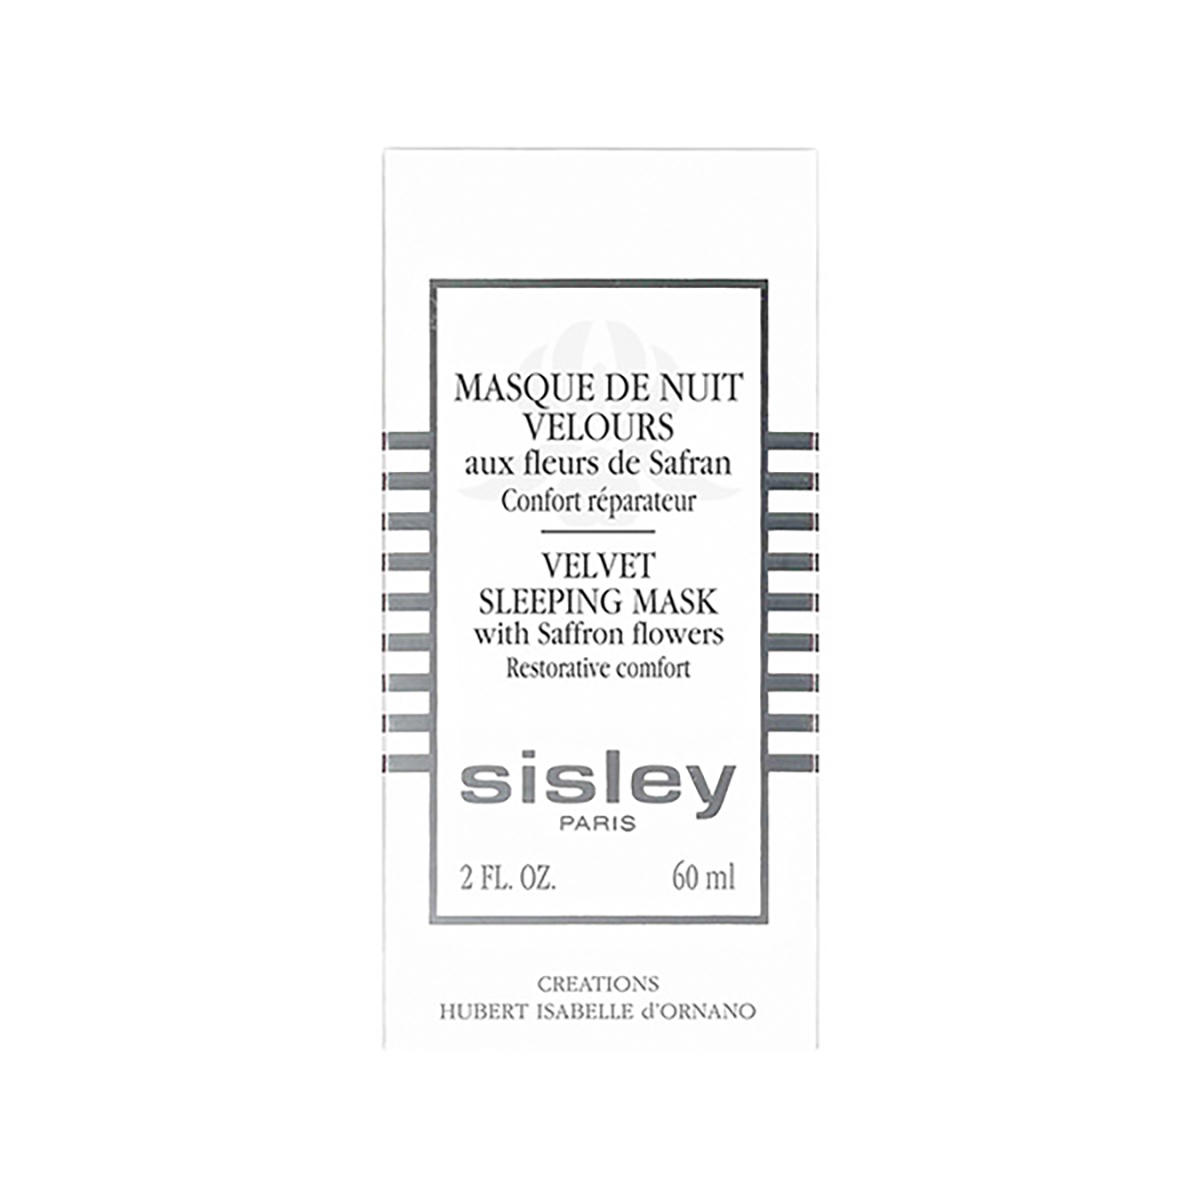 Sisley Paris Masque de Nuit Velours auch fleurs de Safran 60 ml - 3